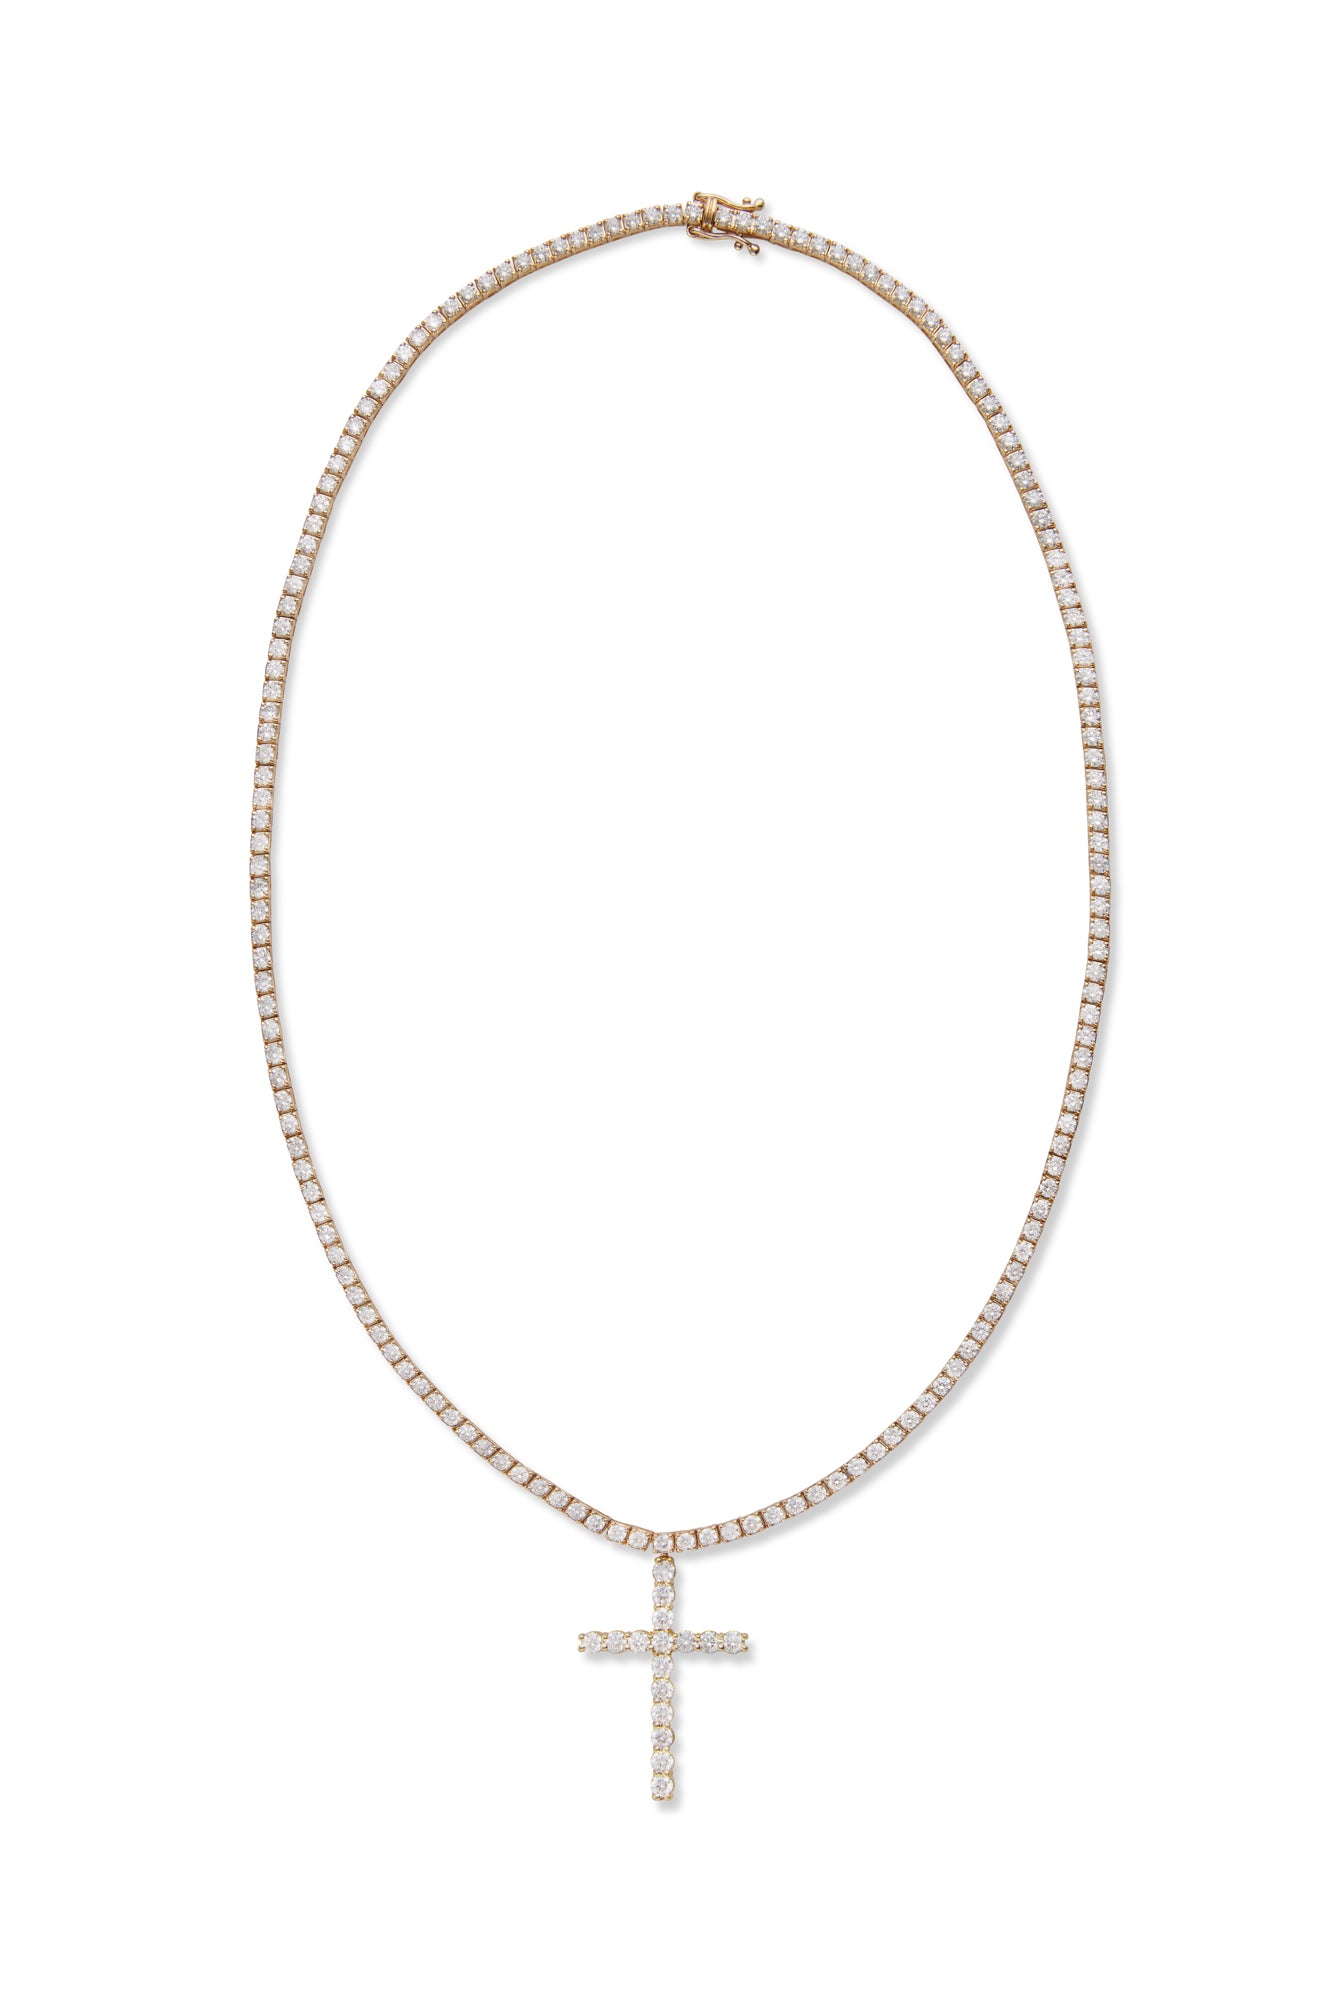 14KY Diamond Tennis Necklace with Diamond Cross